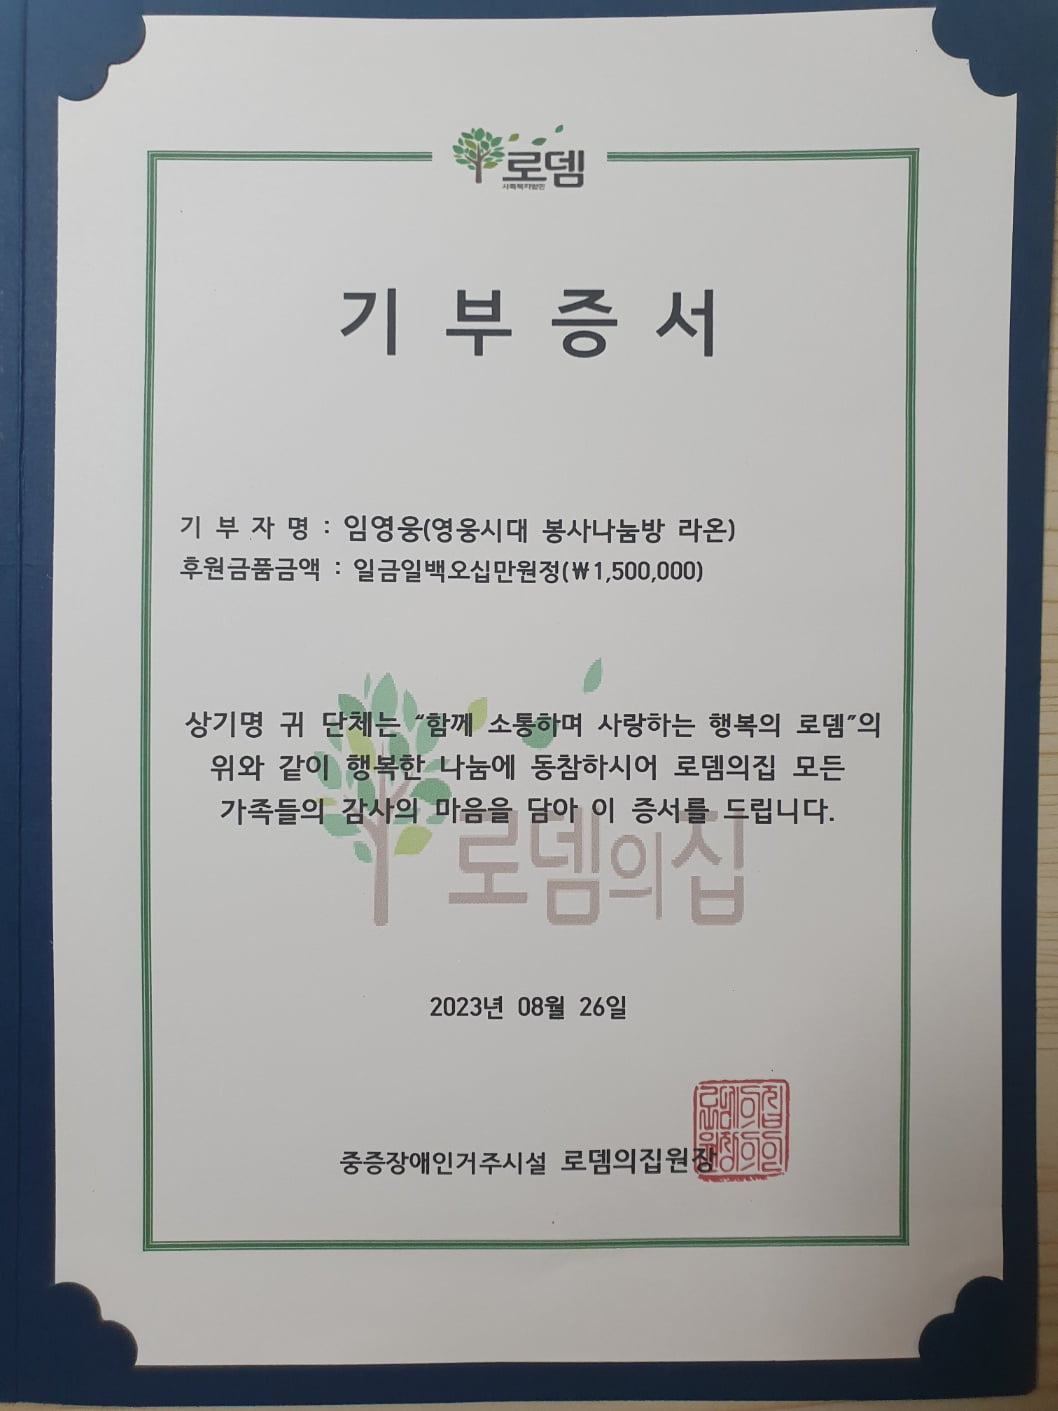 임영웅 팬클럽 영웅시대, 양평 로뎀의집서 26번째 급식봉사와 기부 진행